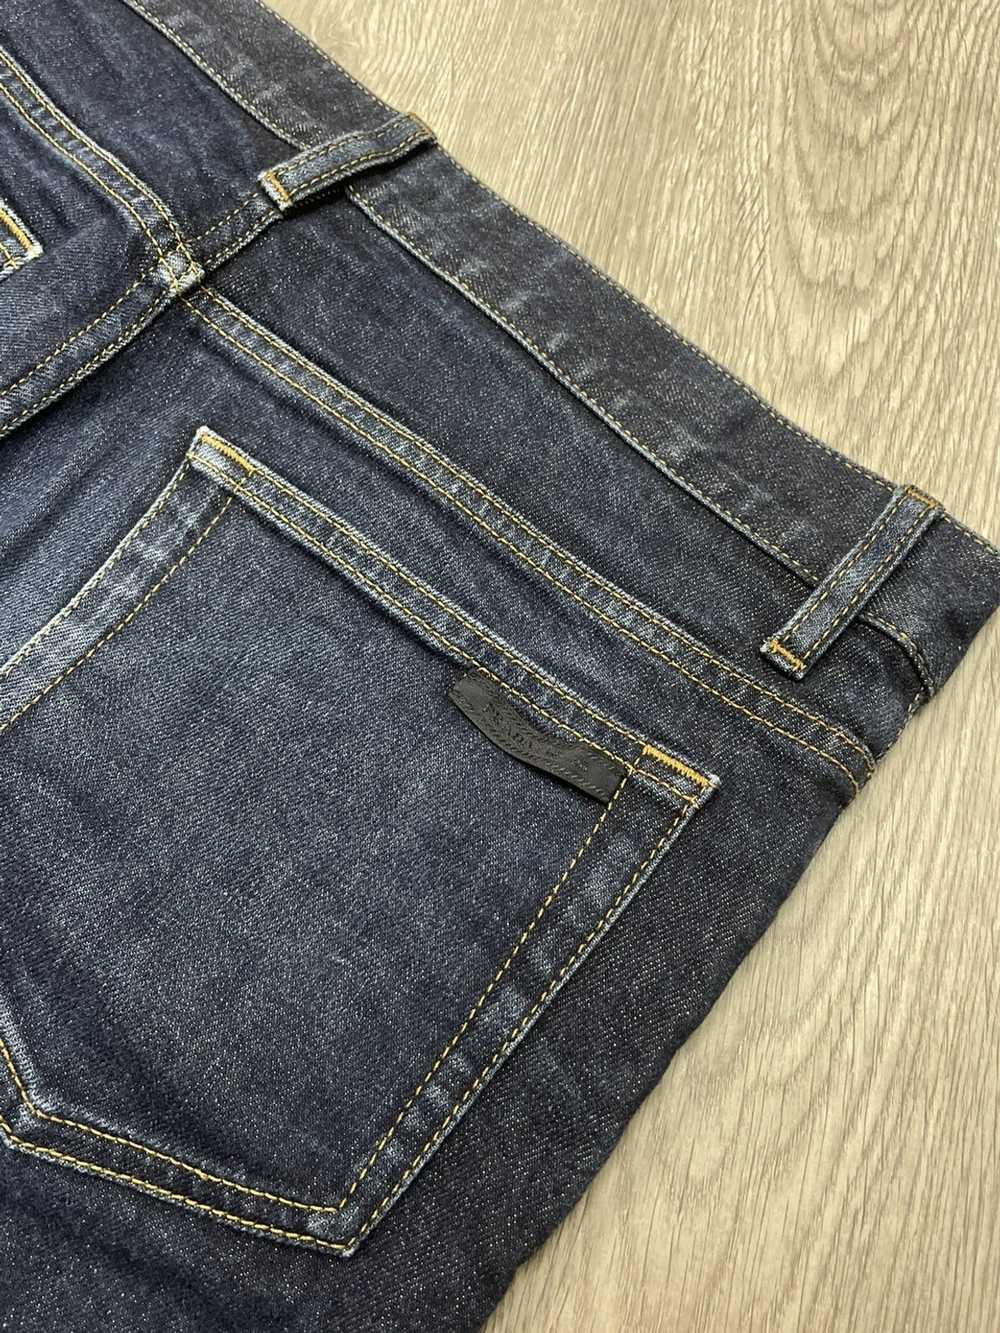 Prada × Streetwear × Vintage Prada jeans - image 2